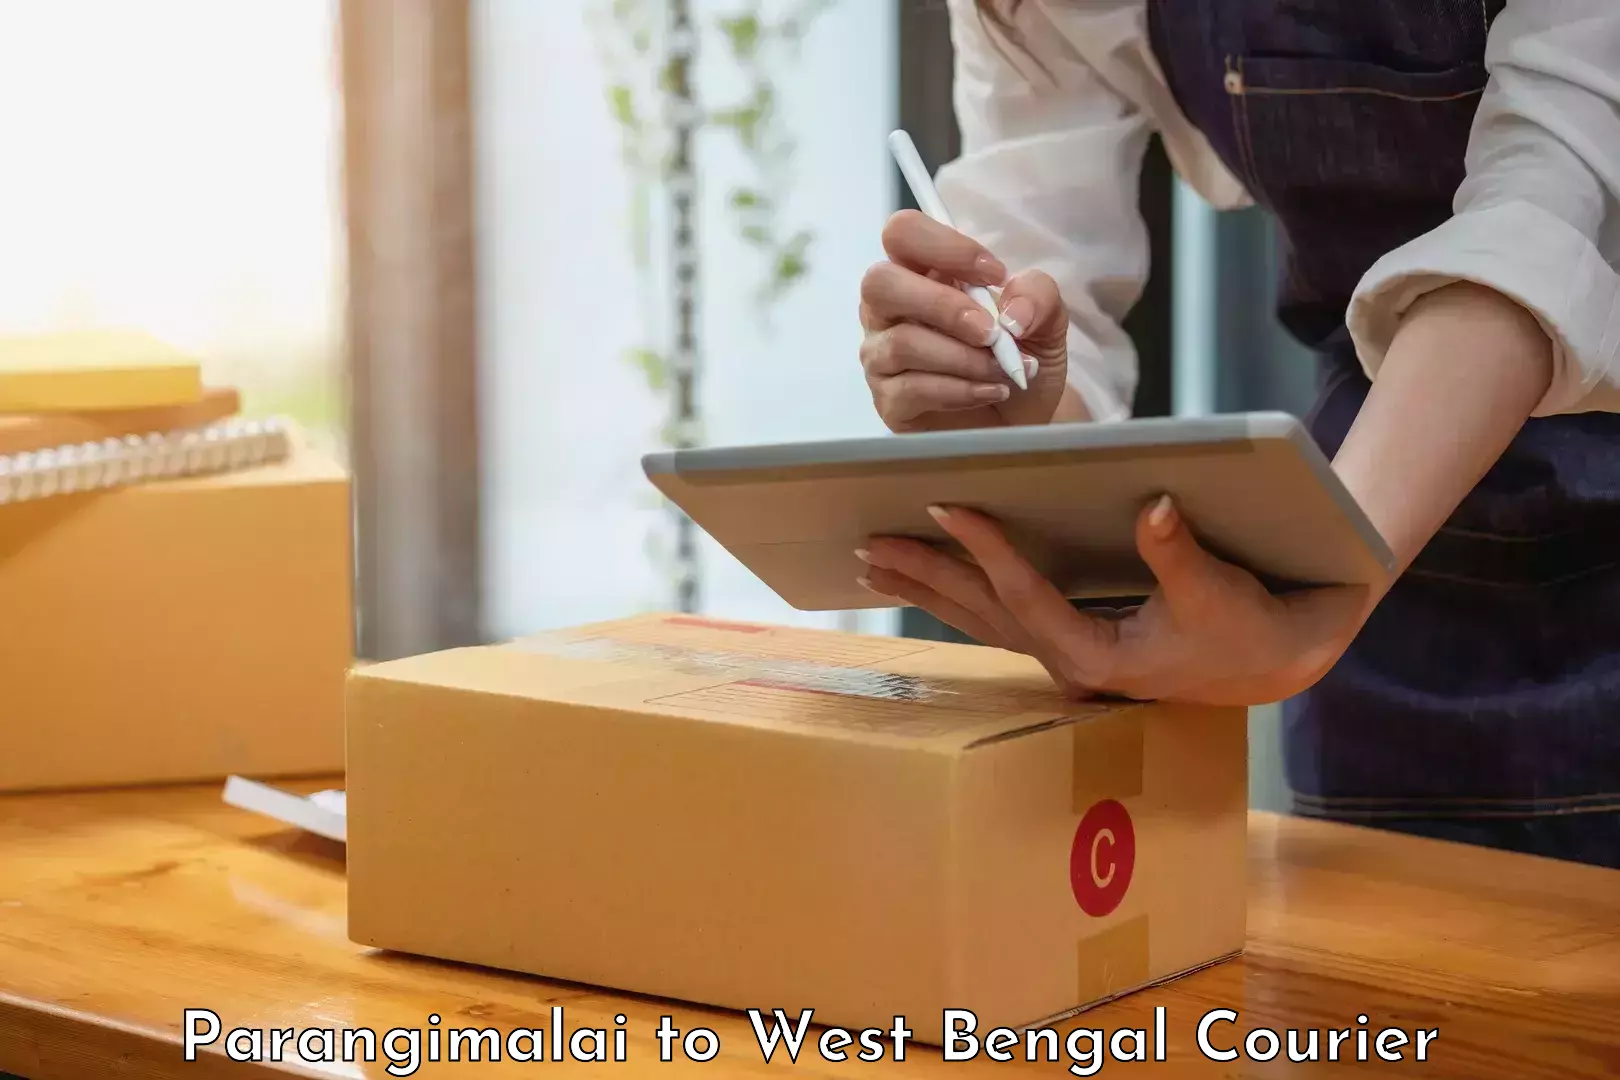 Efficient order fulfillment Parangimalai to West Bengal